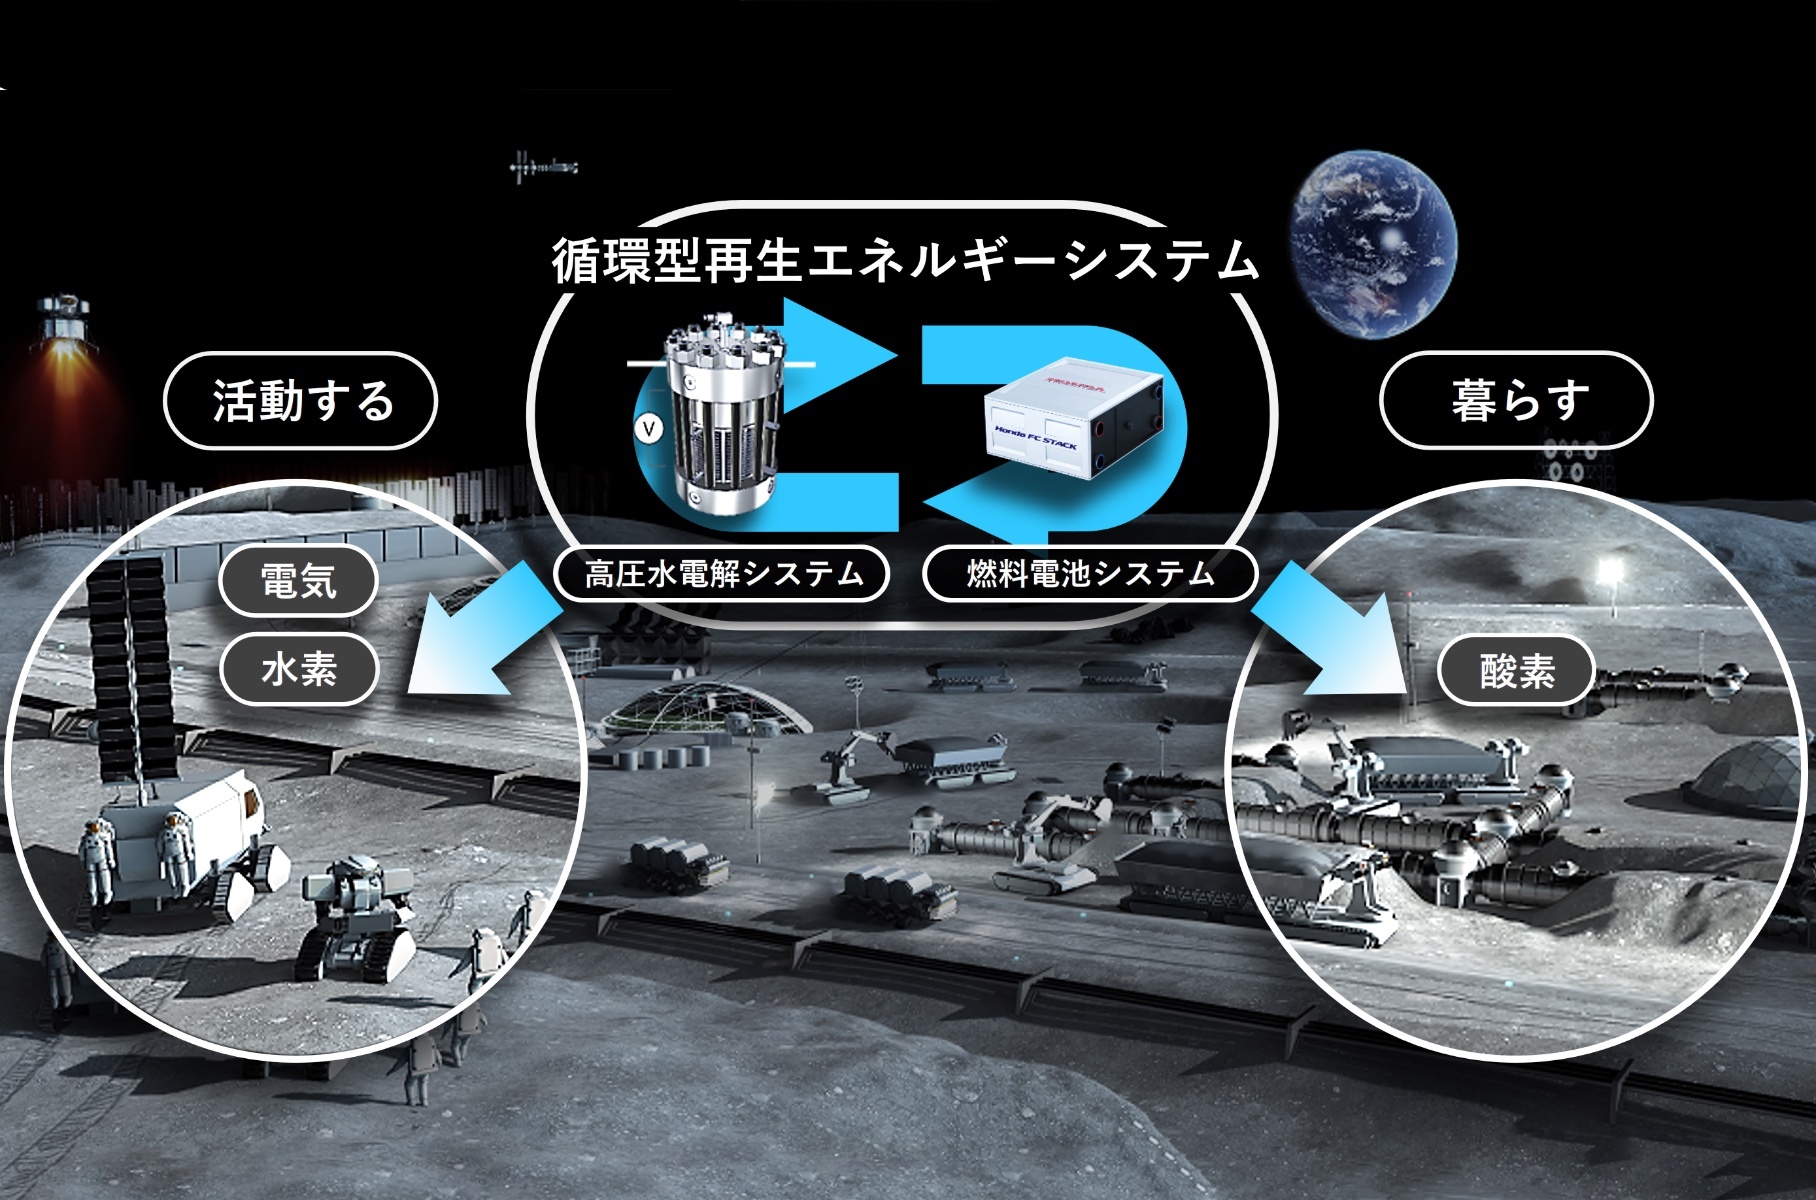 Honda будет строить ракеты и роботов-аватаров для лунных баз